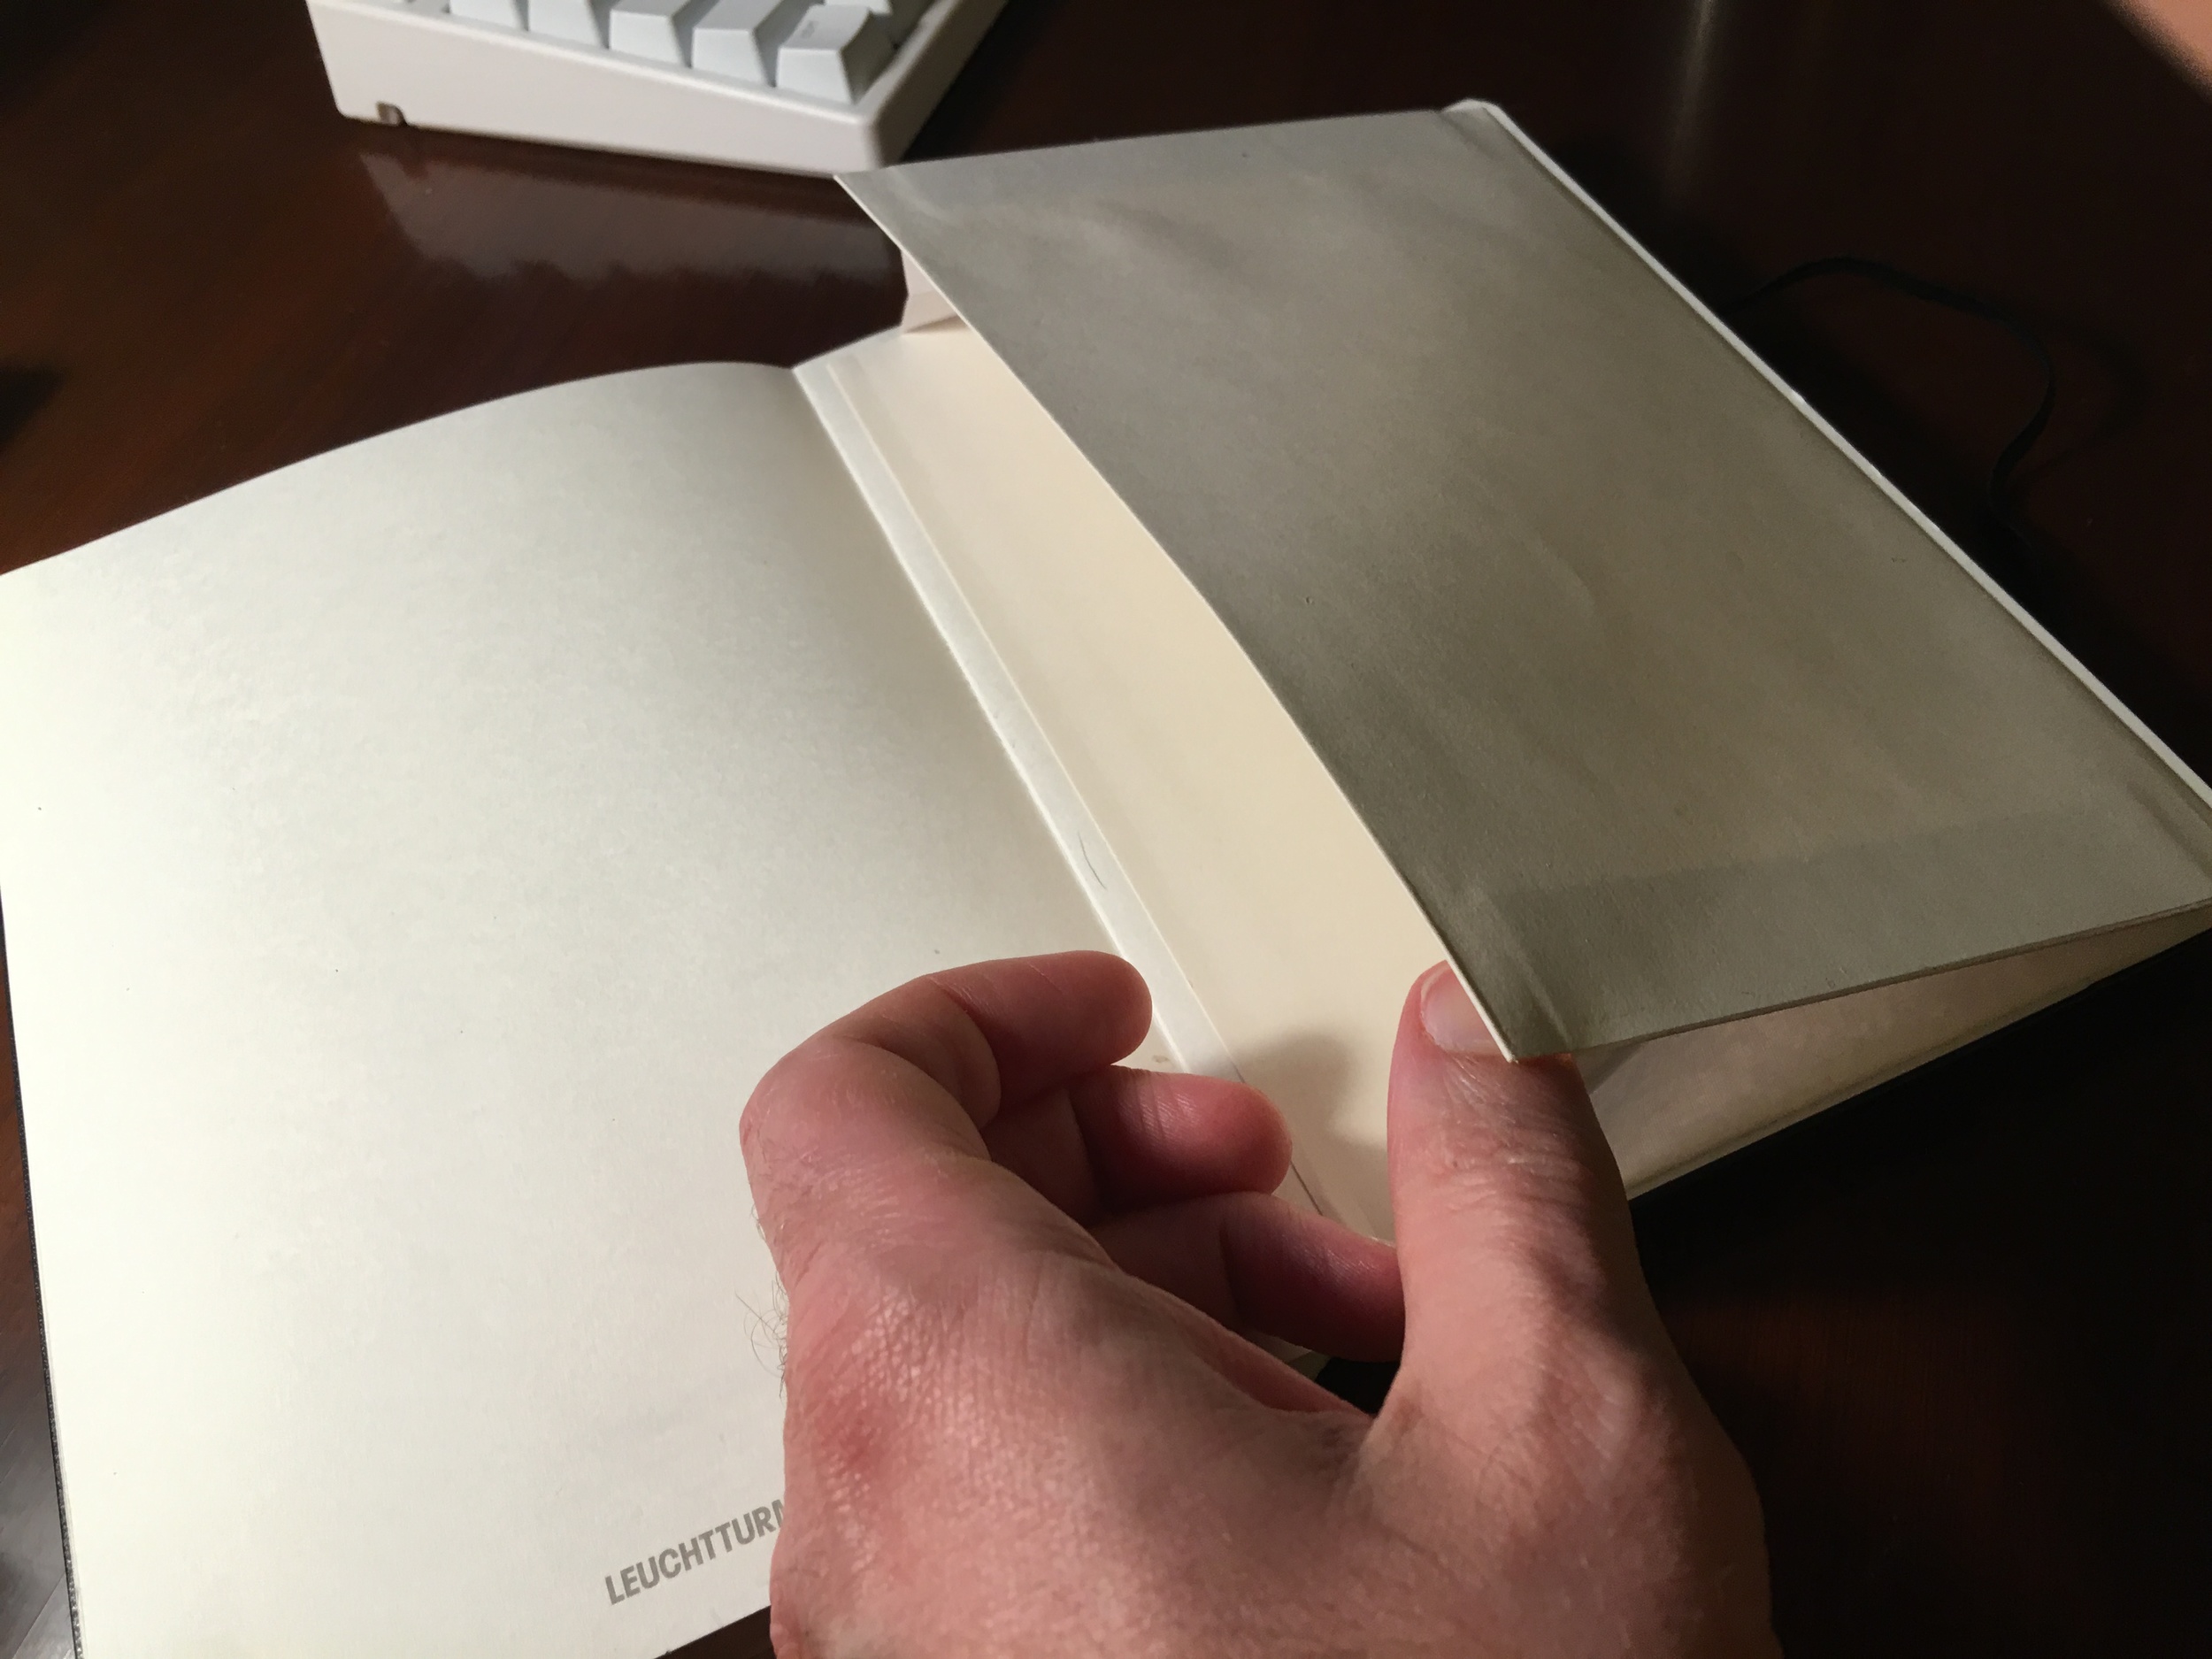 Leuchtturm 1917 A5 Notebook: The Fountain-Pen Friendly Basic Black Notebook  — The Gentleman Stationer